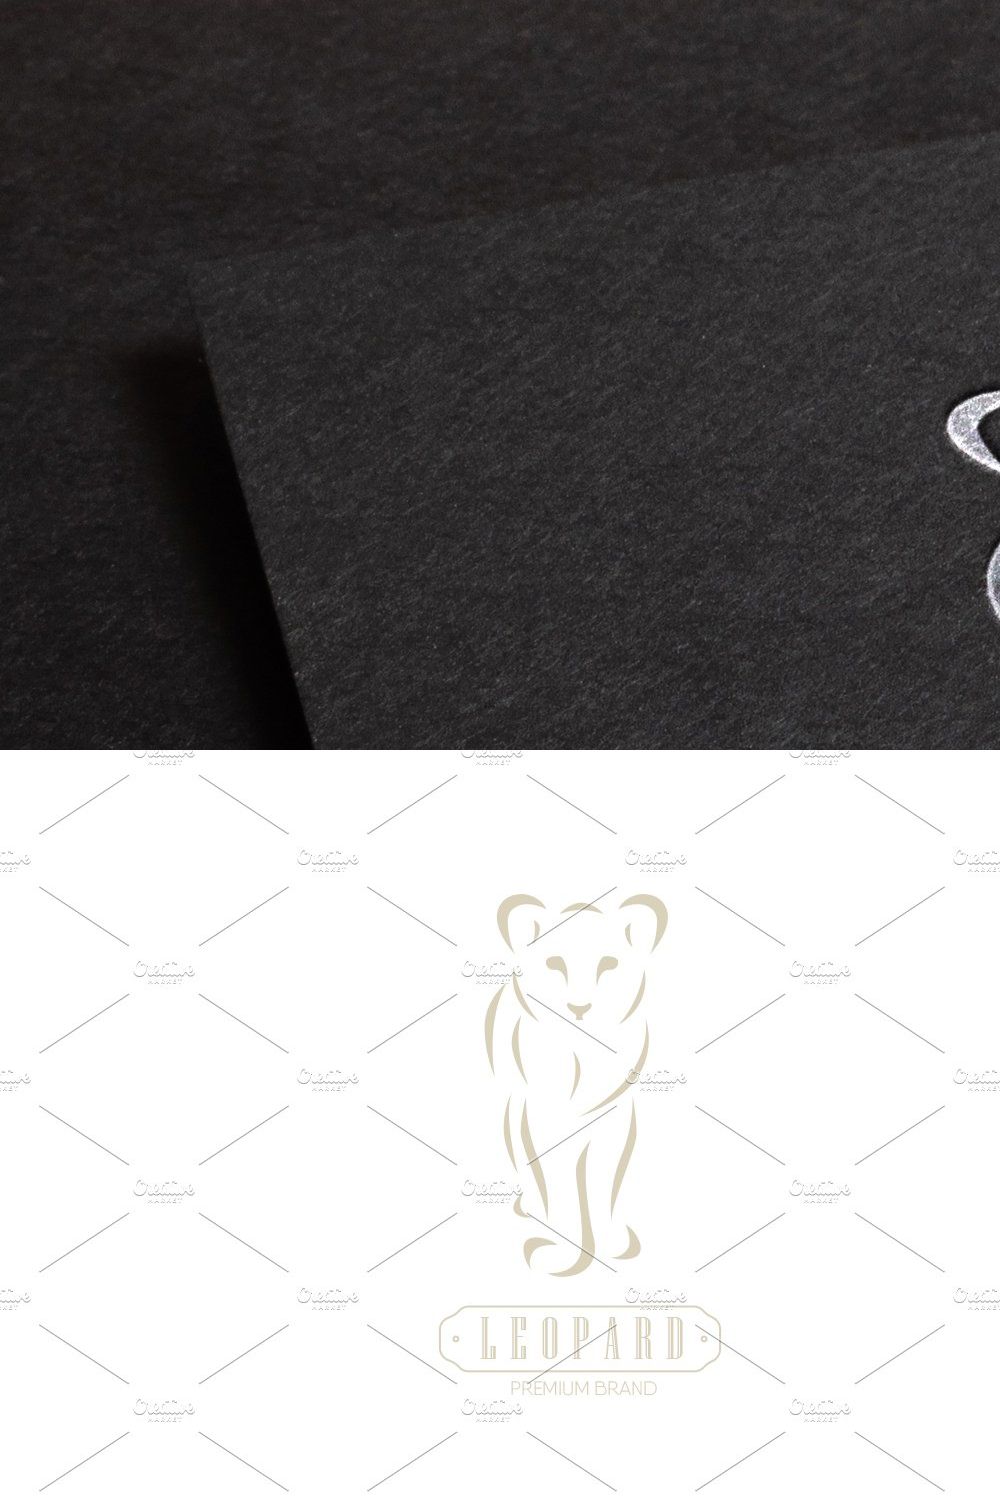 Leopard Logo Premium pinterest preview image.